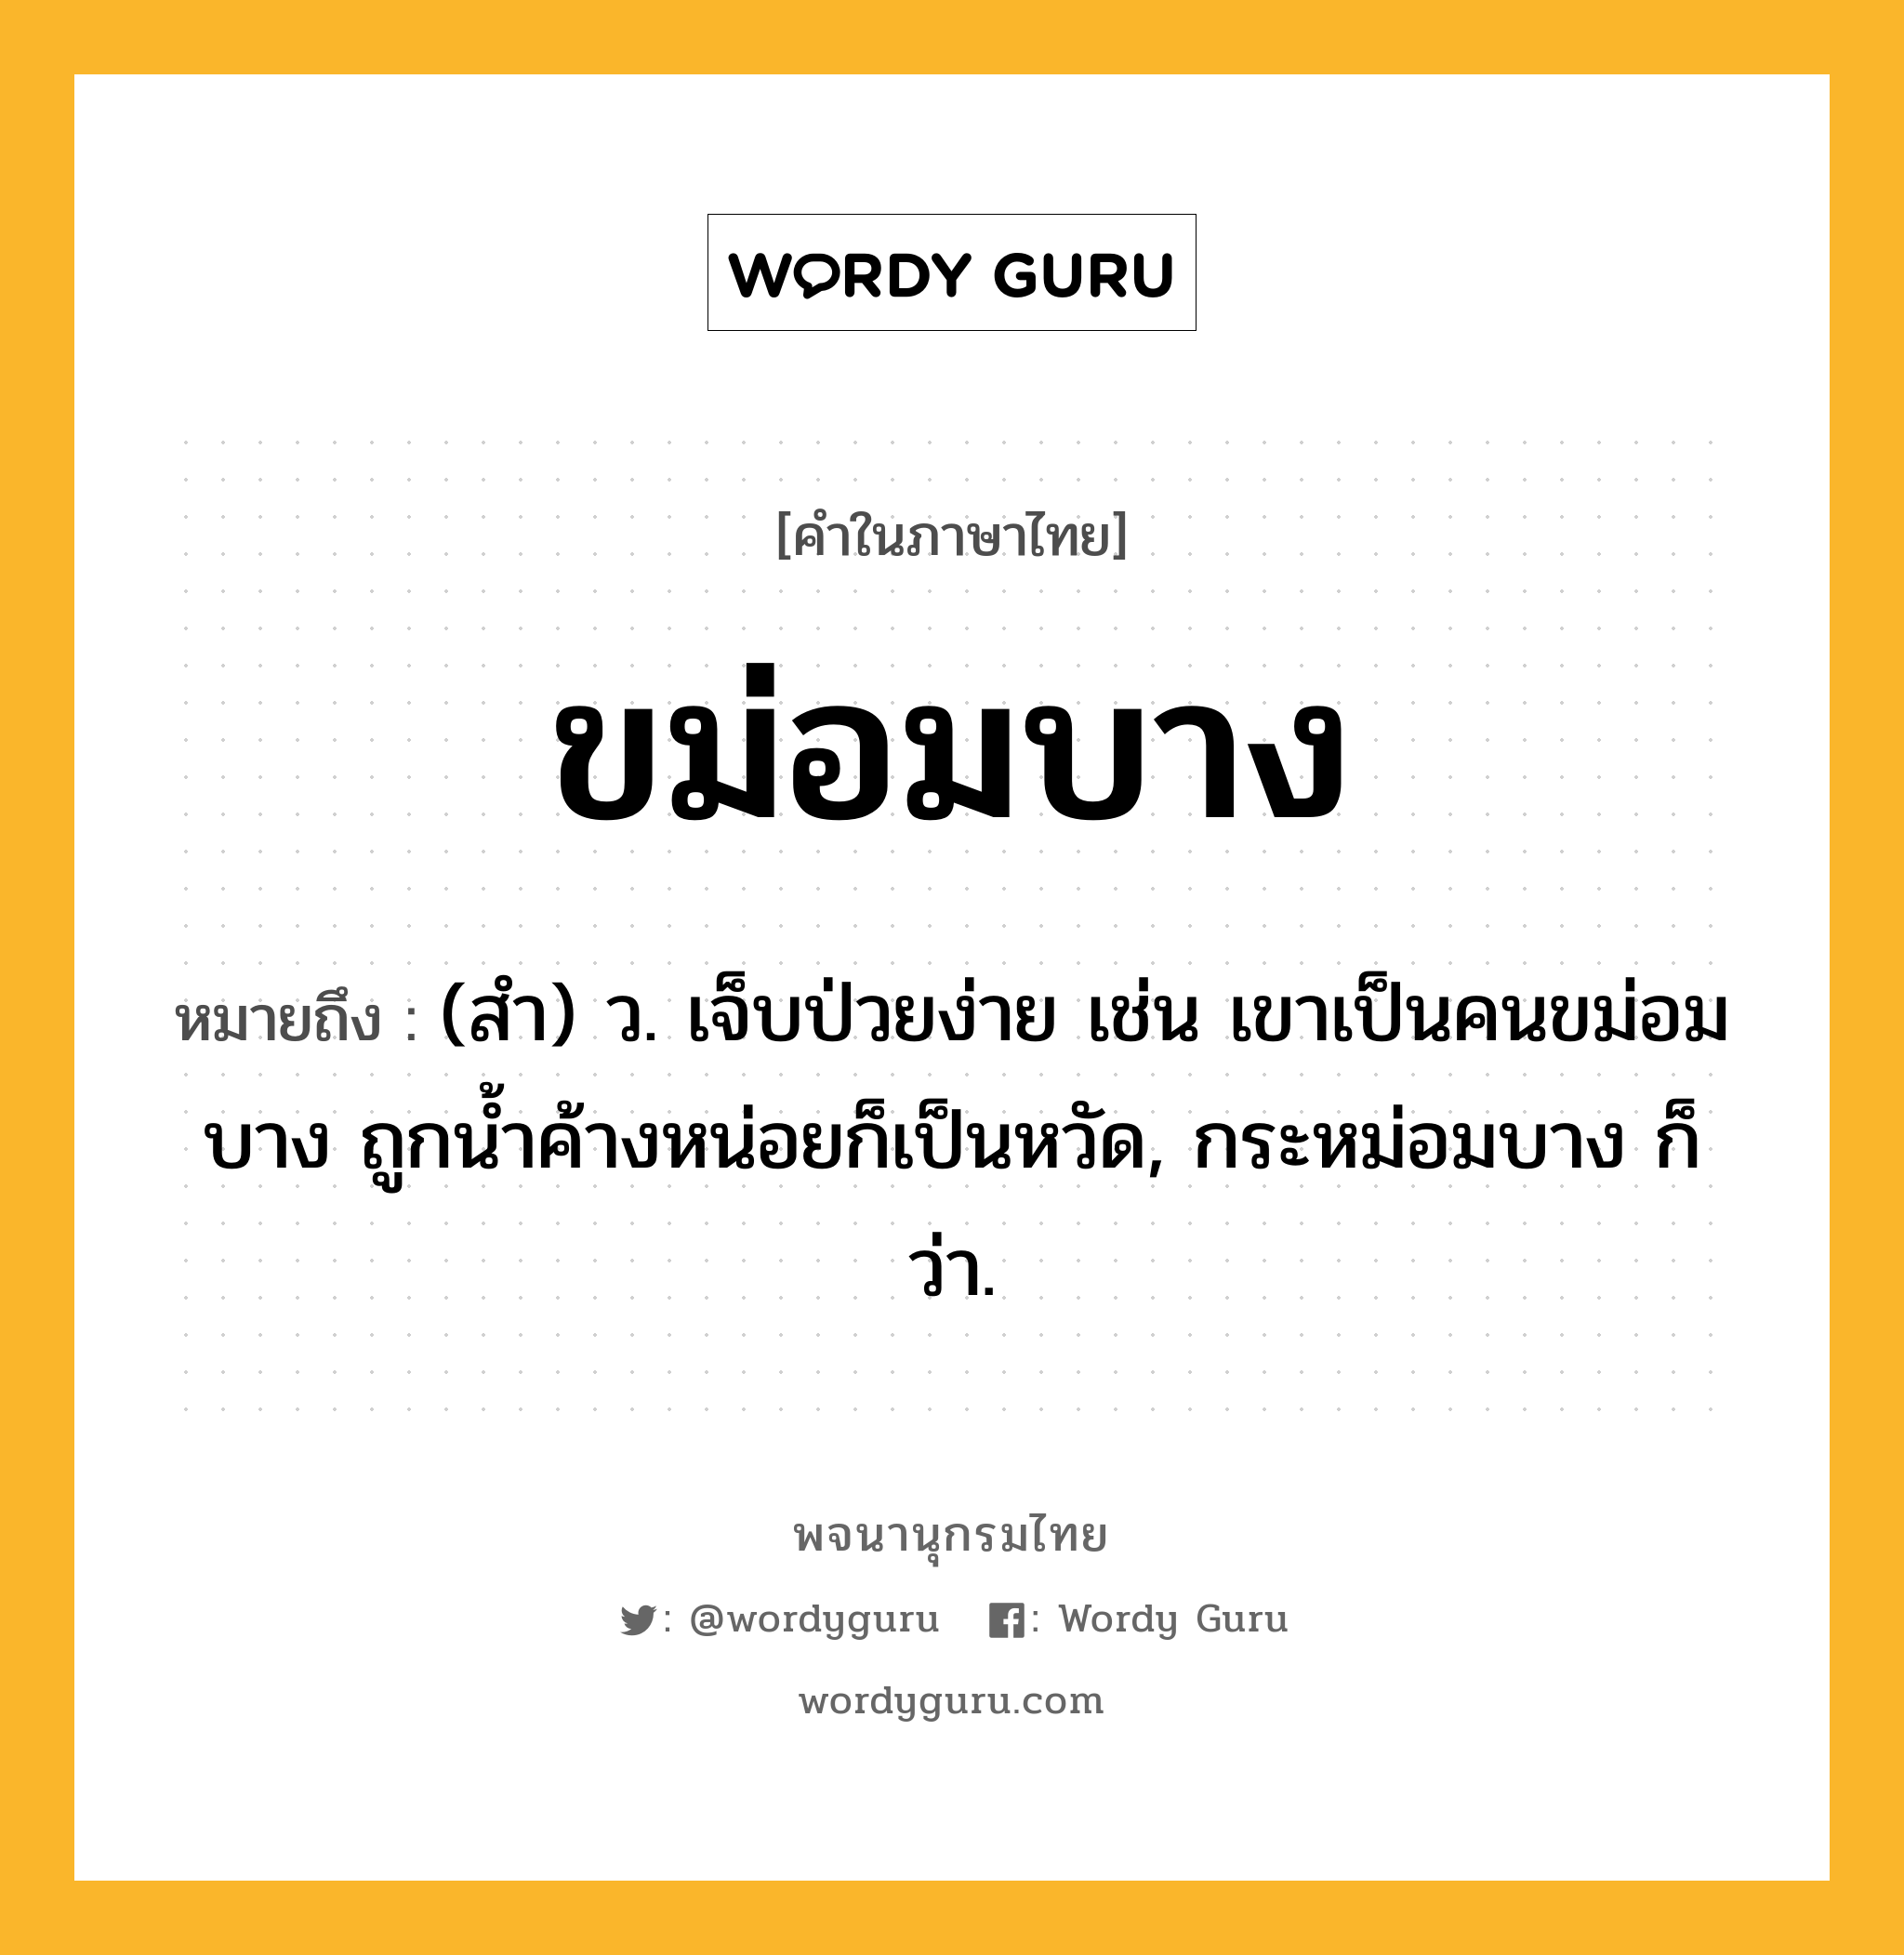 ขม่อมบาง หมายถึงอะไร?, คำในภาษาไทย ขม่อมบาง หมายถึง (สํา) ว. เจ็บป่วยง่าย เช่น เขาเป็นคนขม่อมบาง ถูกนํ้าค้างหน่อยก็เป็นหวัด, กระหม่อมบาง ก็ว่า.